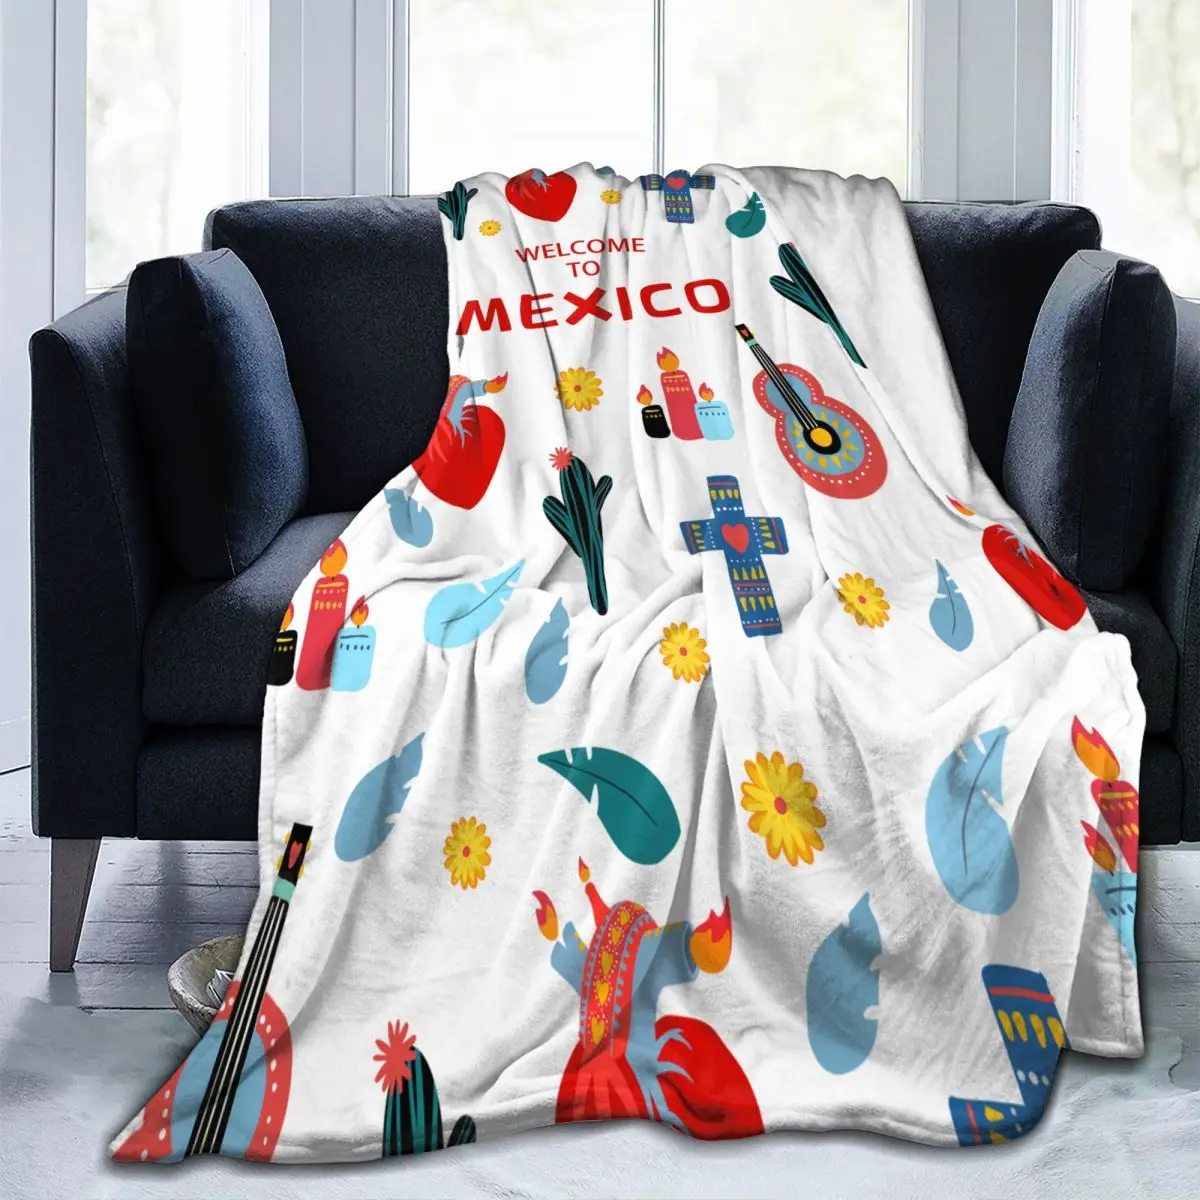 Мексиканское одеяло, ультрамягкие Уютные цветущие цветы, Декоративное фланелевое одеяло на весь сезон для дома, дивана, кровати, кресла, путешествий 5